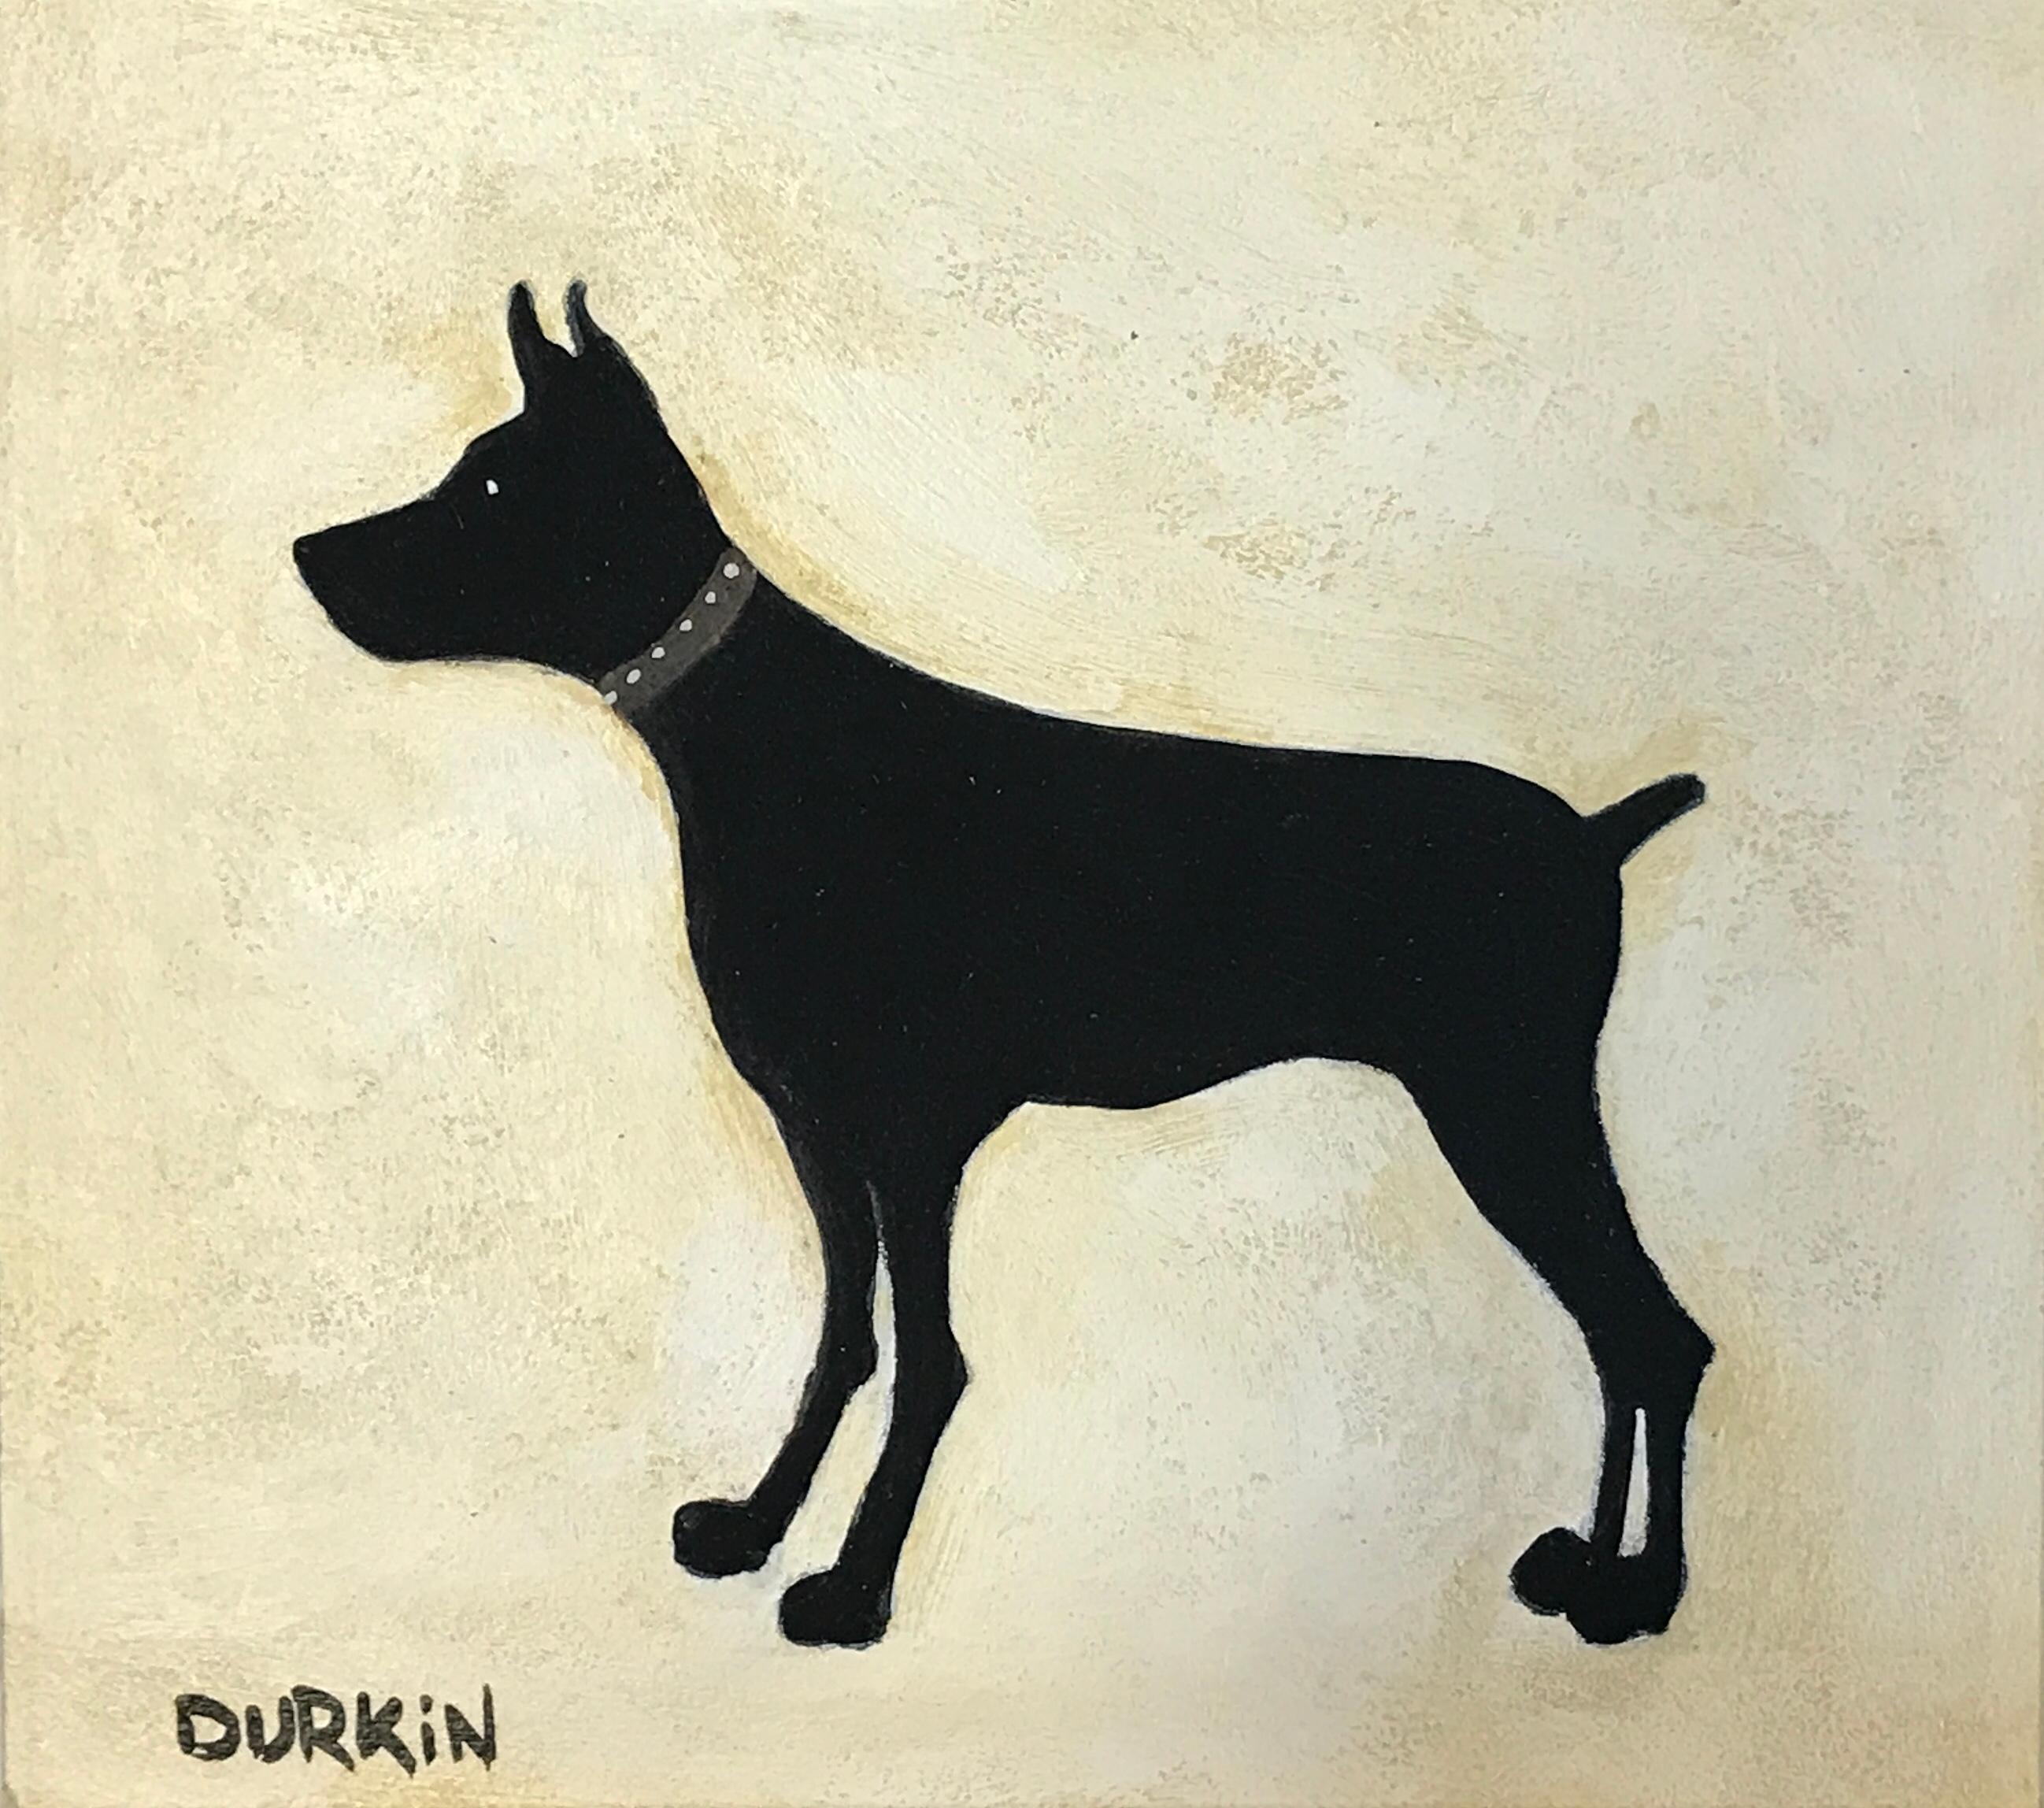 
Peinture originale de Black Dog I. Sean utilise des couleurs très atténuées mais attire l'attention sur un chien noir sur un fond plus clair.

INFORMATIONS COMPLÉMENTAIRES :
Peinture acrylique sur toile
30 H x 32 L x 5 P cm (11.81 x 12.60 x 1.97